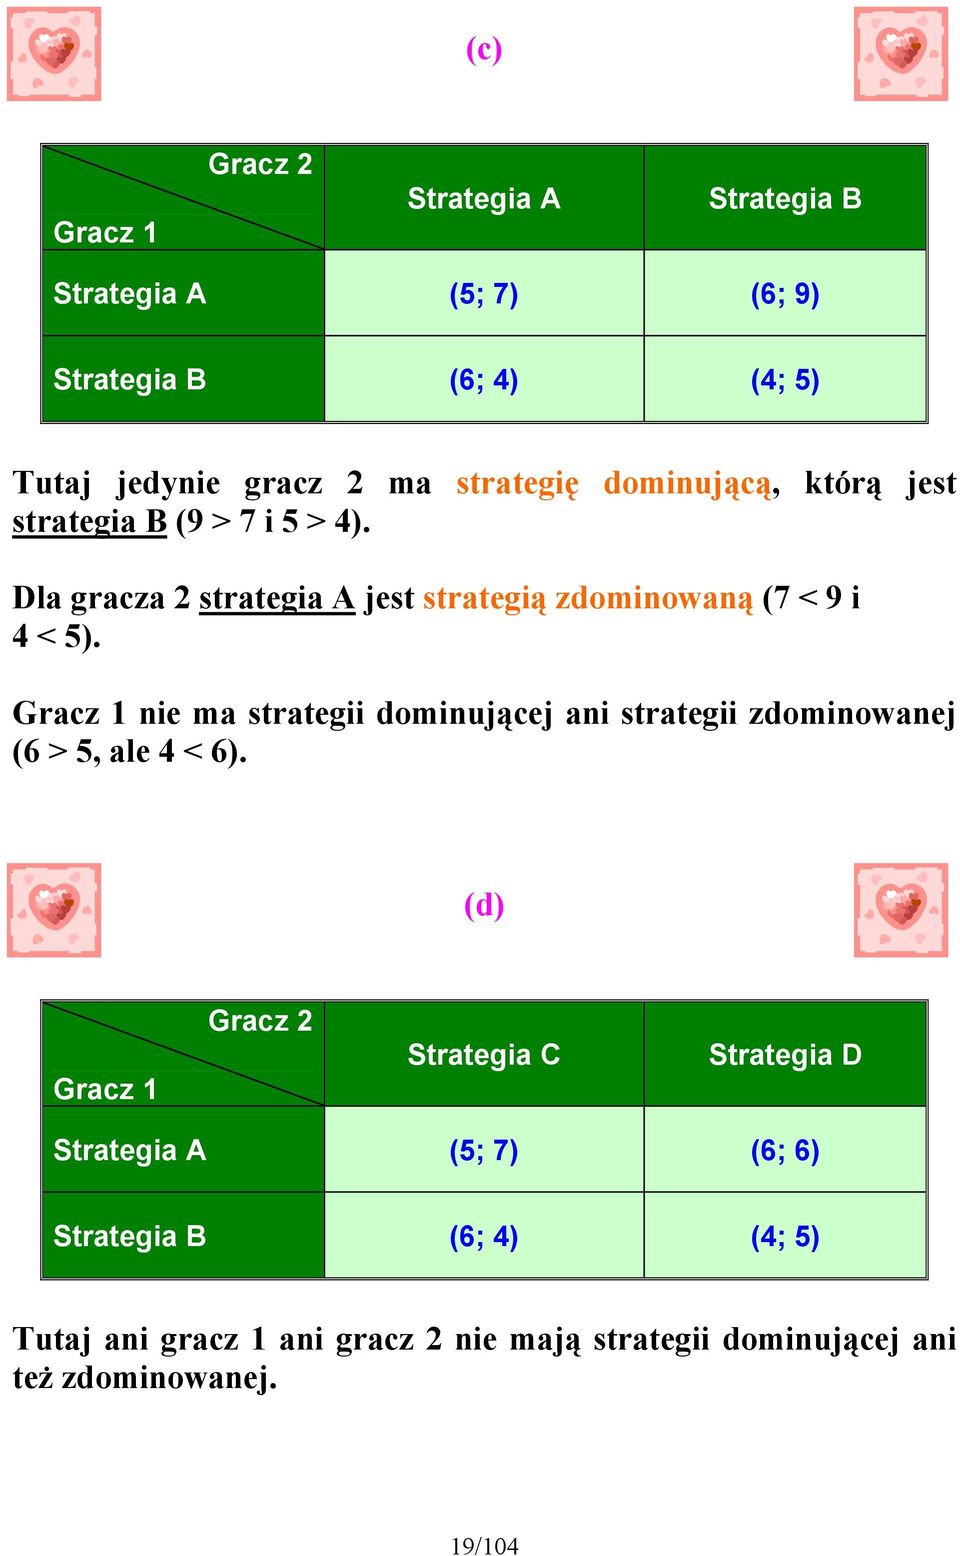 Gracz 1 nie ma strategii dominującej ani strategii zdominowanej (6 > 5, ale 4 < 6).